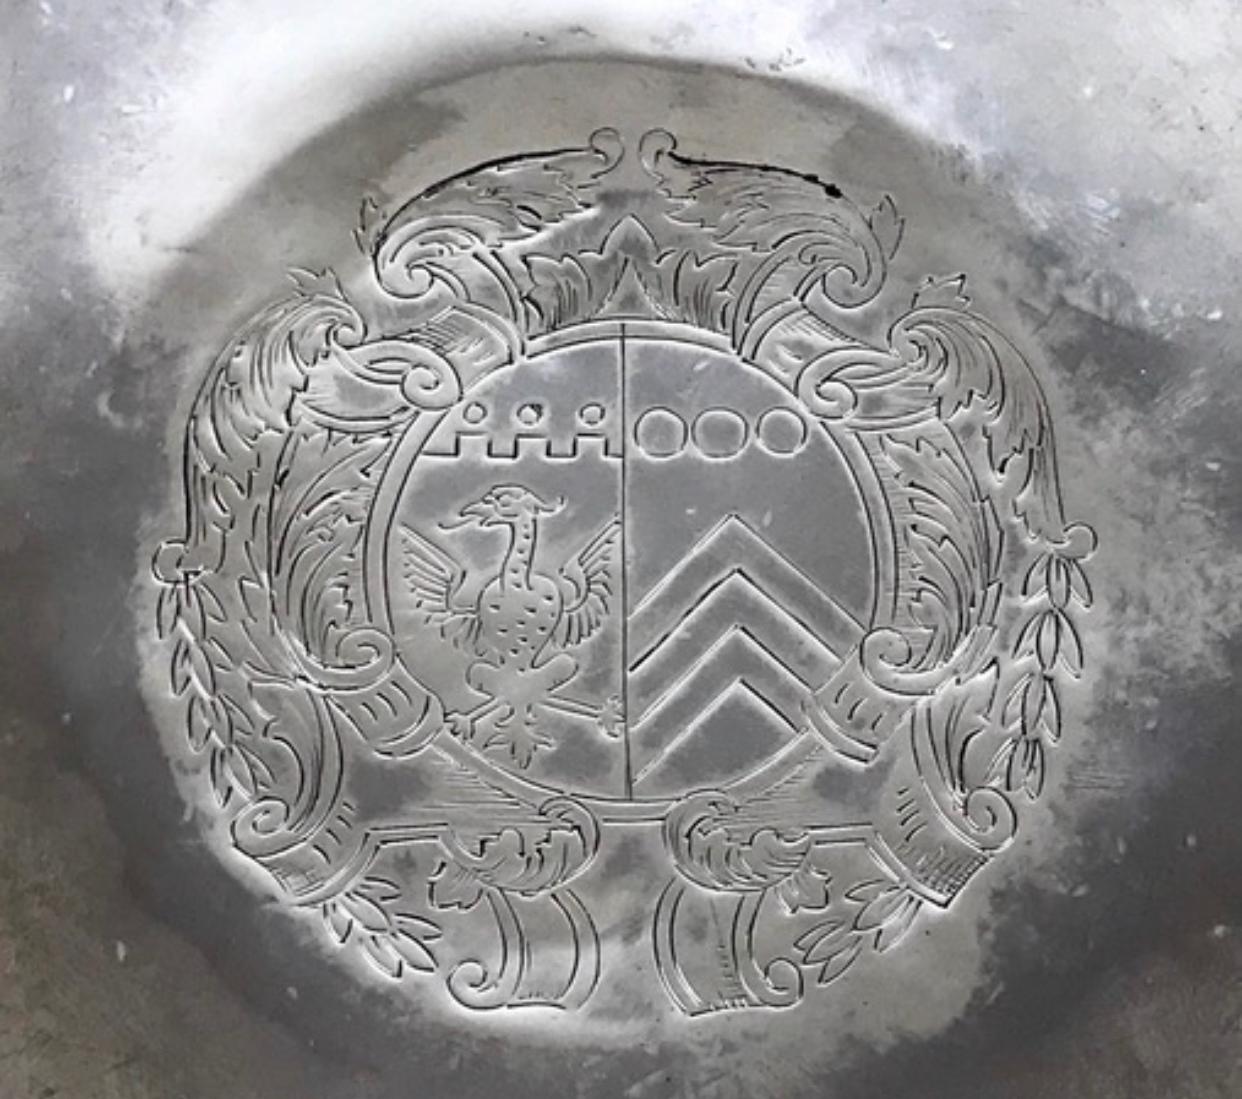 Un Rare Early Portuguese Solid Silver Sterling Tazza en très bon état, argent martelé. 

Le plateau circulaire repose sur un pied évasé et effilé. Un armorial se trouve au milieu de la partie supérieure.

Le sommet et la base sont clairement